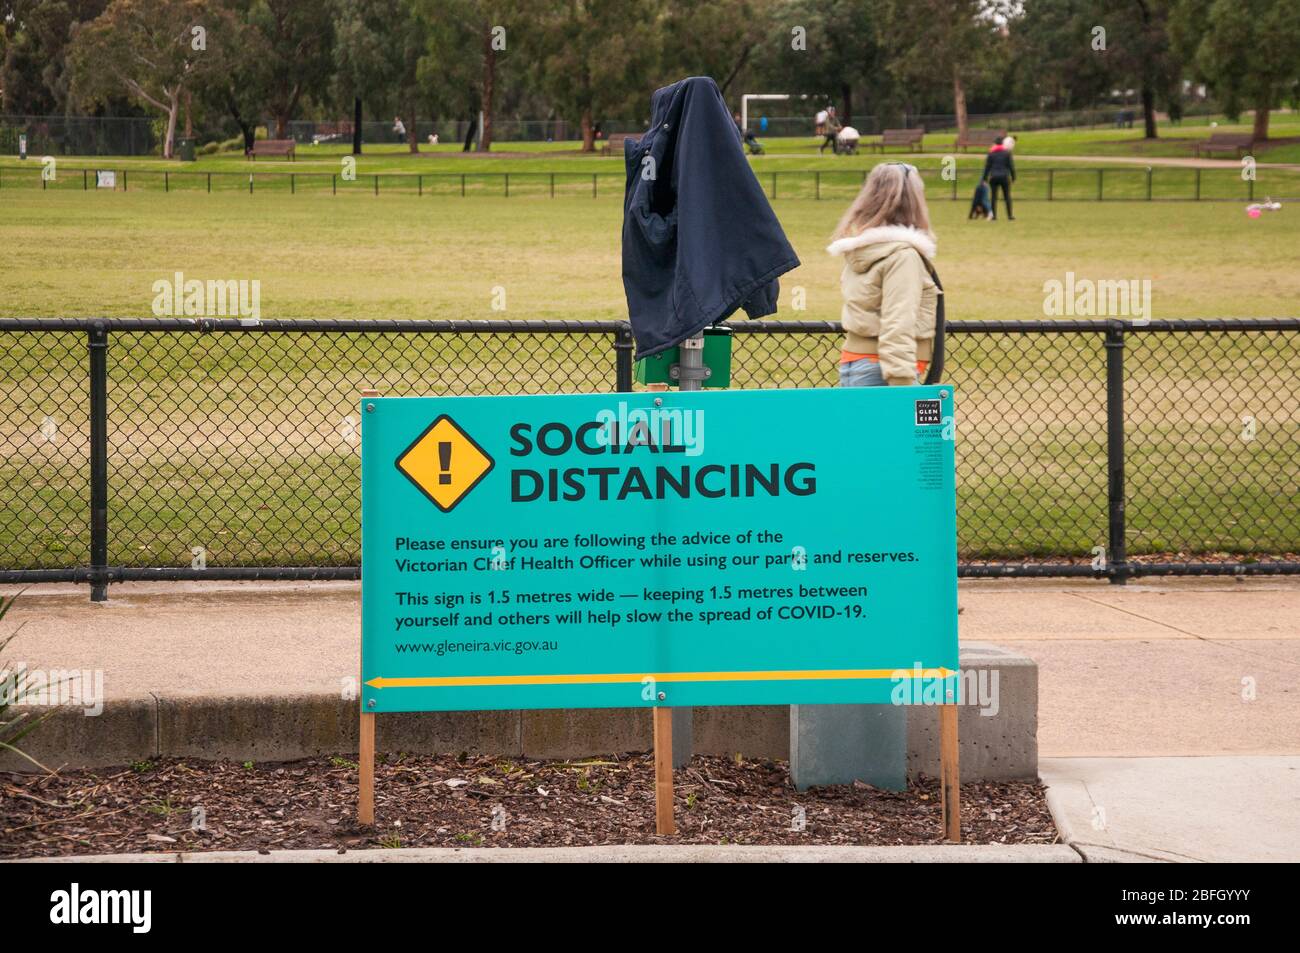 L'avis des autorités locales dans un parc de banlieue favorise les distanciation sociale pendant la pandémie COVID-19, Melbourne, Australie Banque D'Images